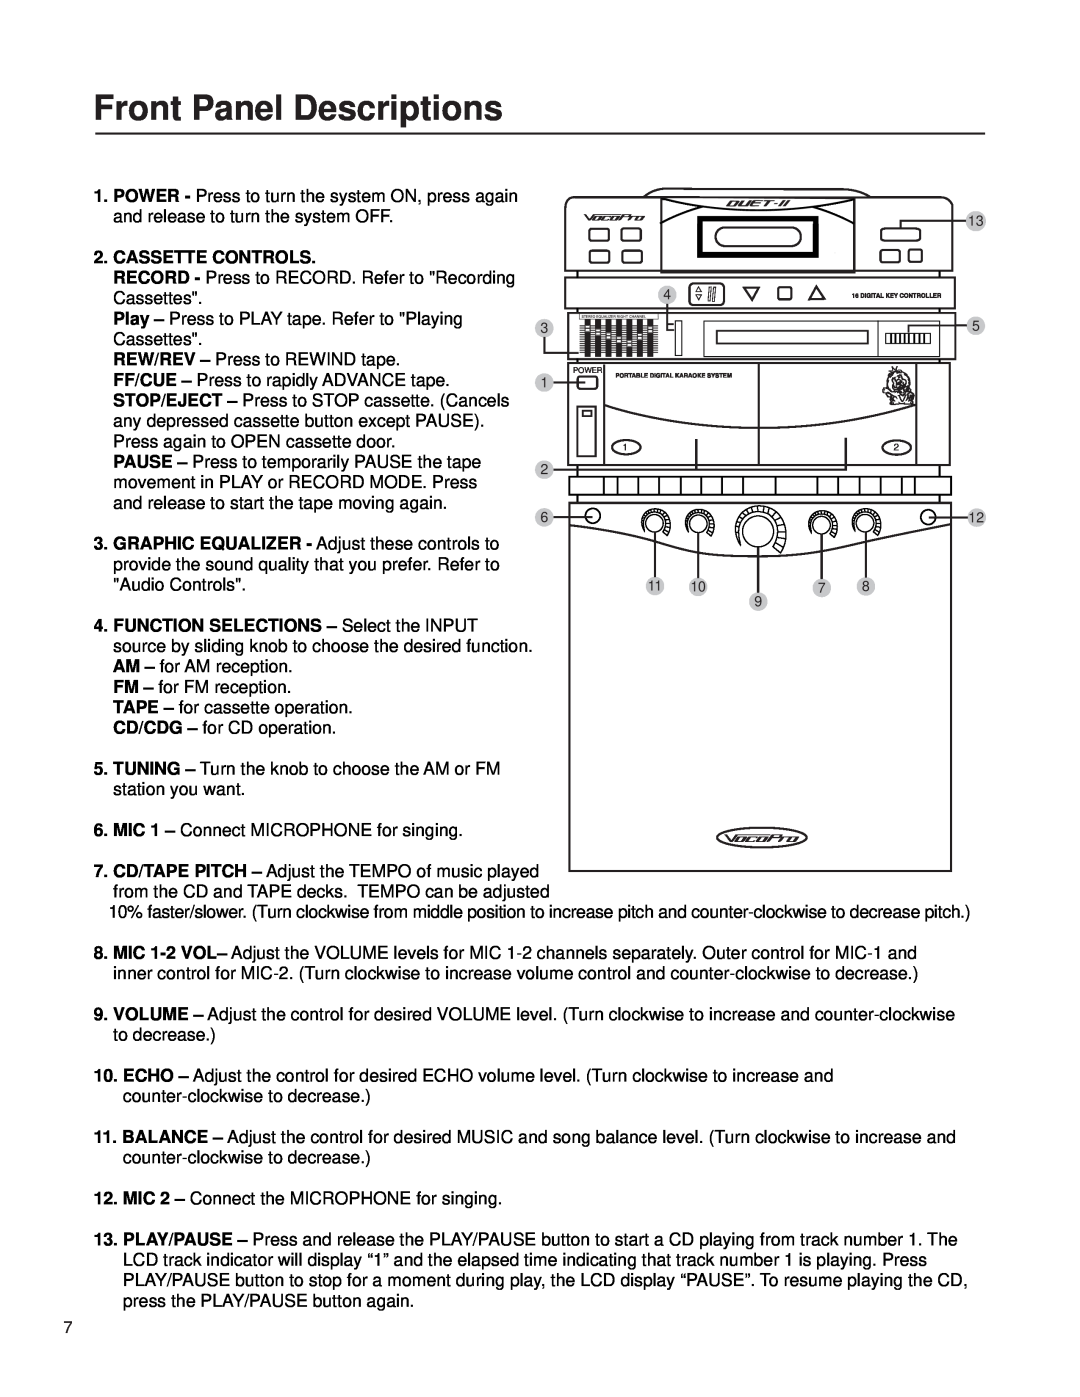 VocoPro Cassette Deck owner manual Front Panel Descriptions, Cassette Controls 